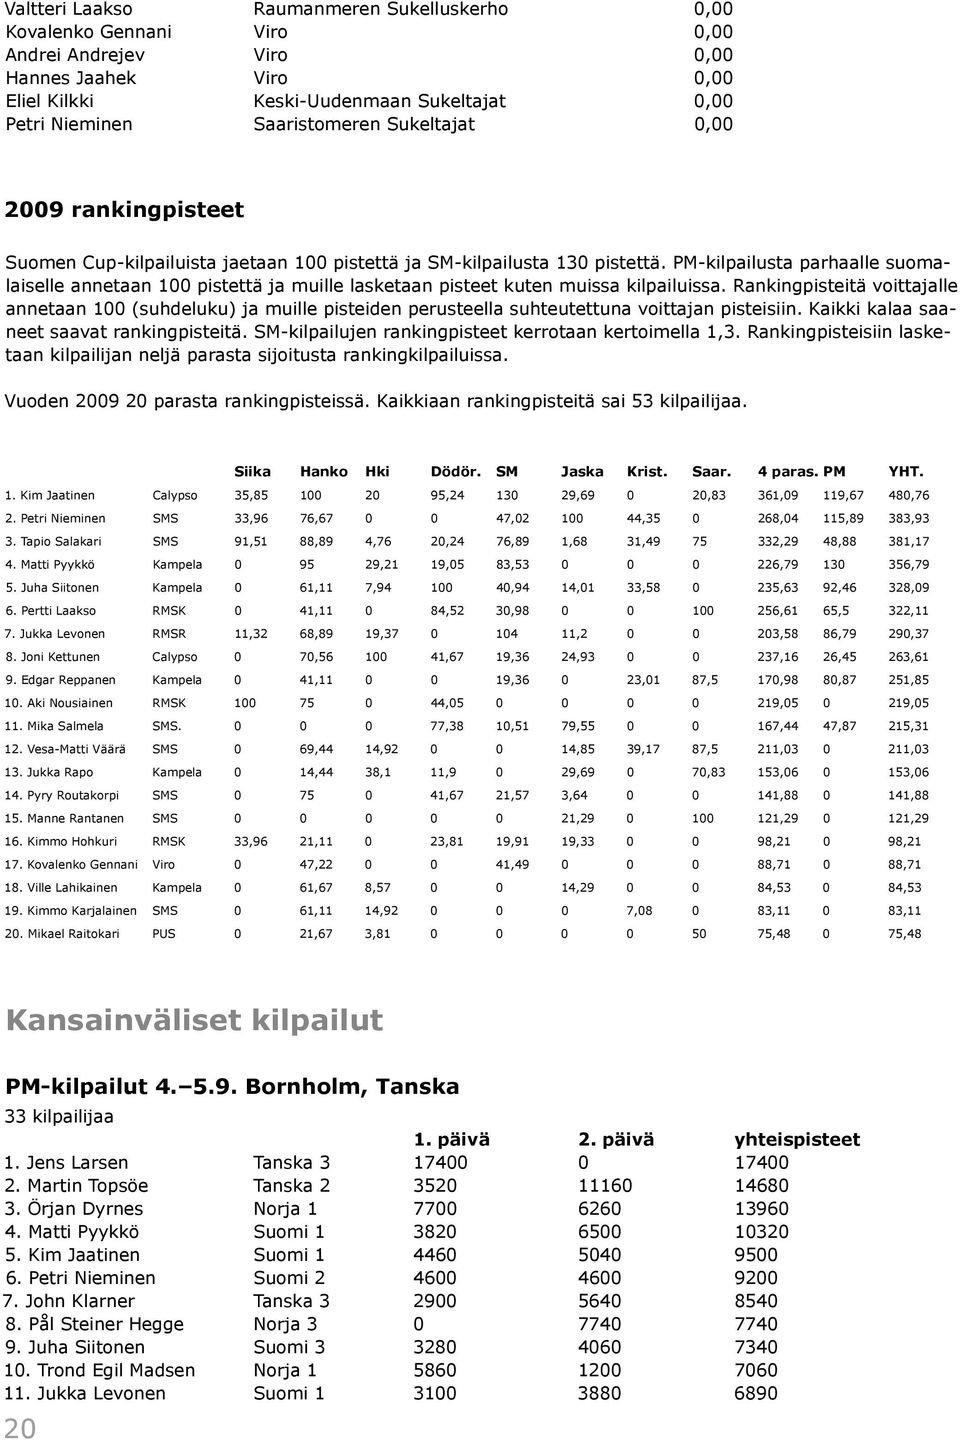 PM-kilpailusta parhaalle suomalaiselle annetaan 100 pistettä ja muille lasketaan pisteet kuten muissa kilpailuissa.